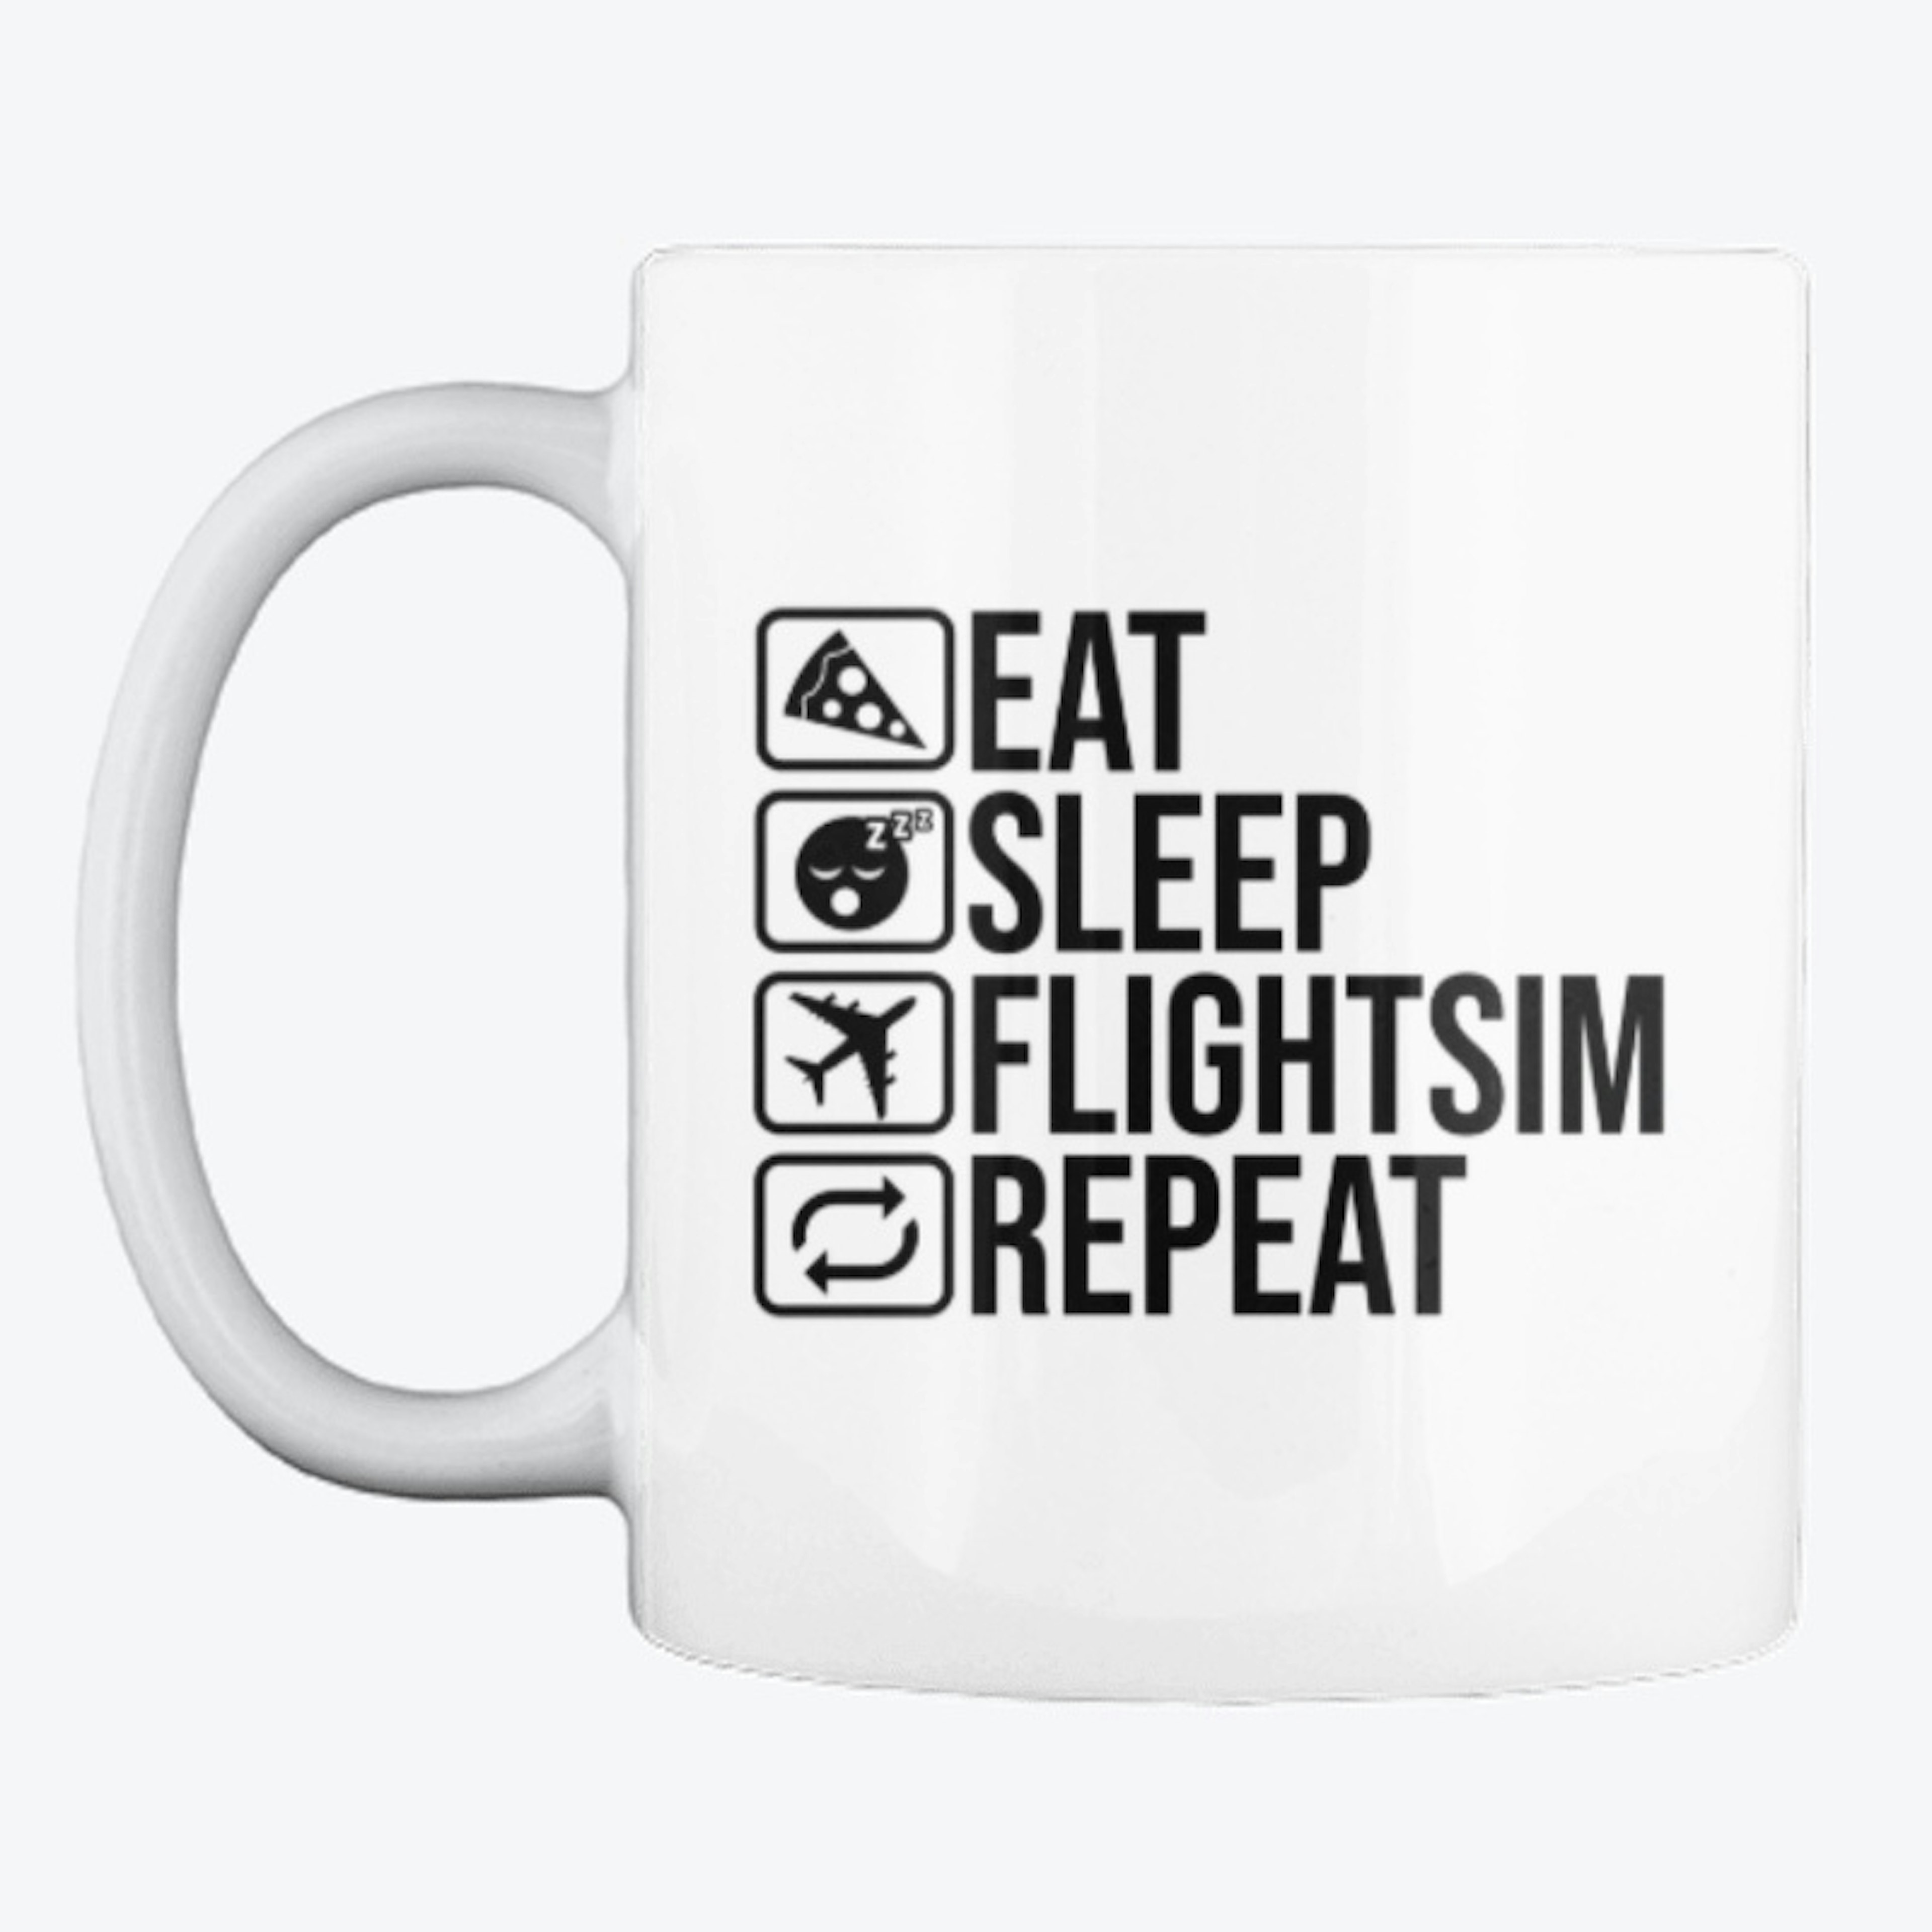 Eat Sleep Flightsim Repeat